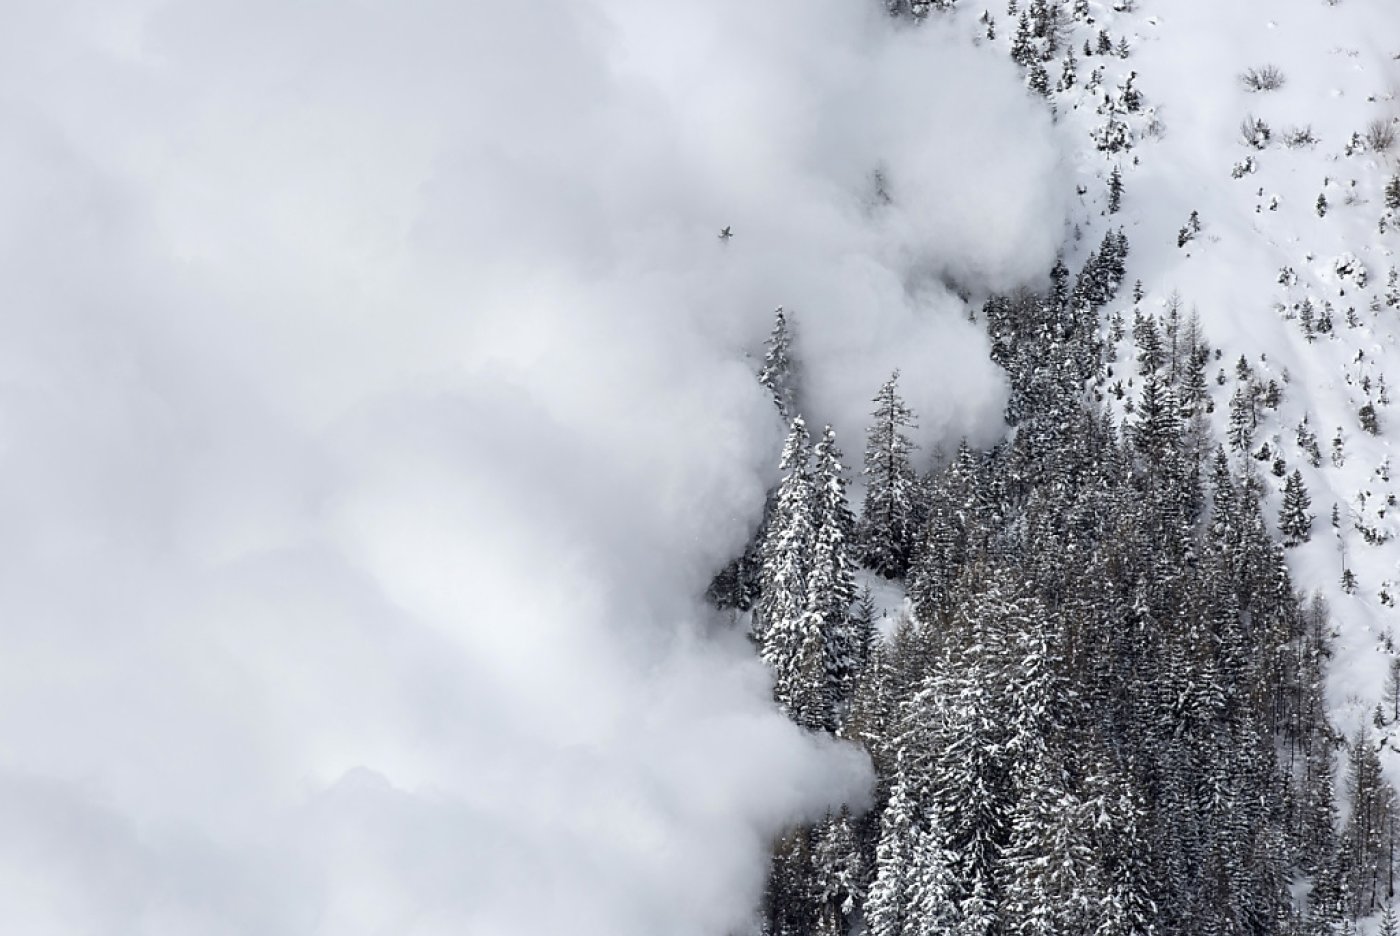 L'avalanche s'est produite au Pigne d'Arolla, qui culmine à 3781 mètres (image symbolique). KEYSTONE